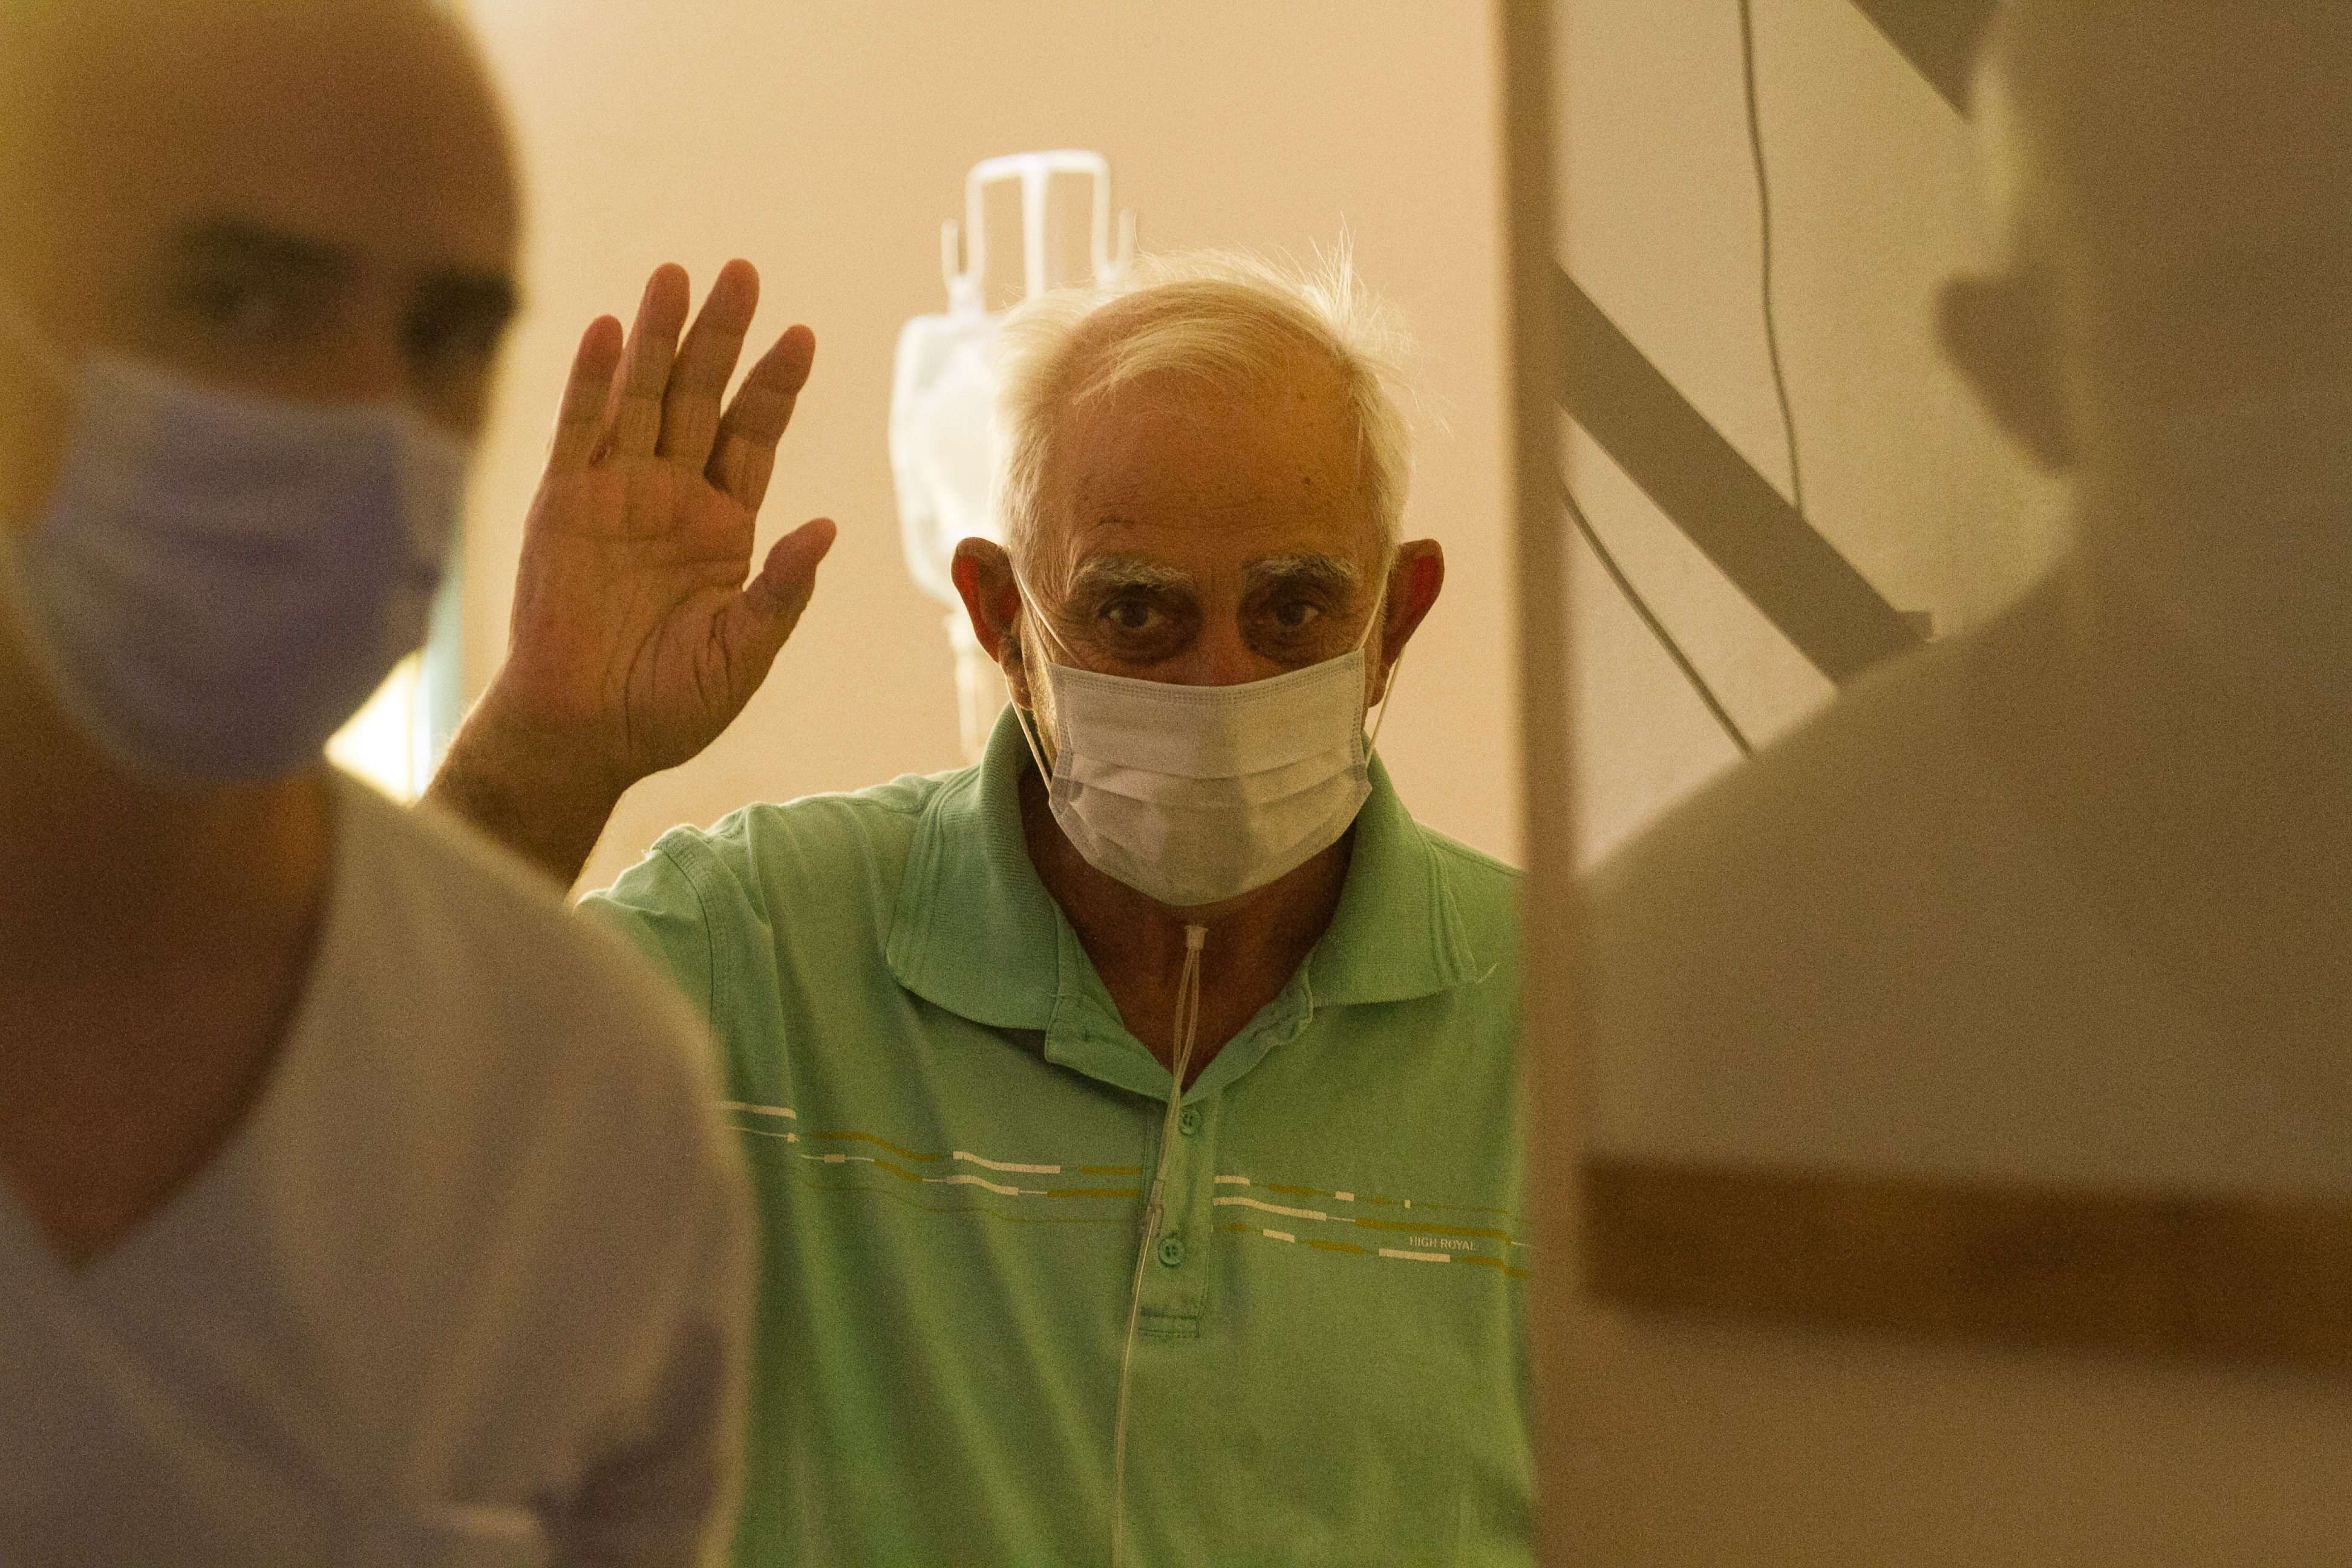 Mario saluda en el momento de su alta médica.
 
Foto: Pablo Leguizamon